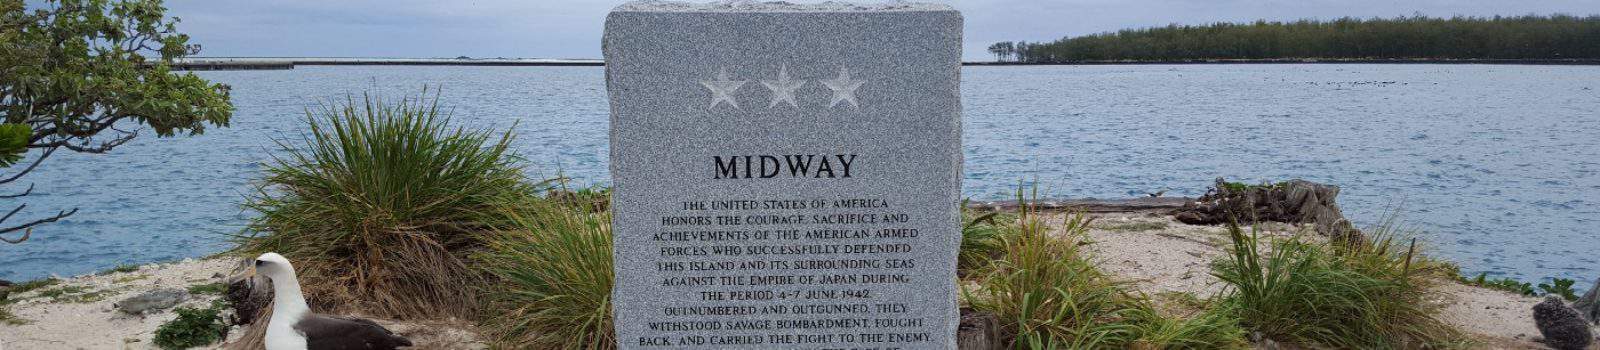 midway memorial